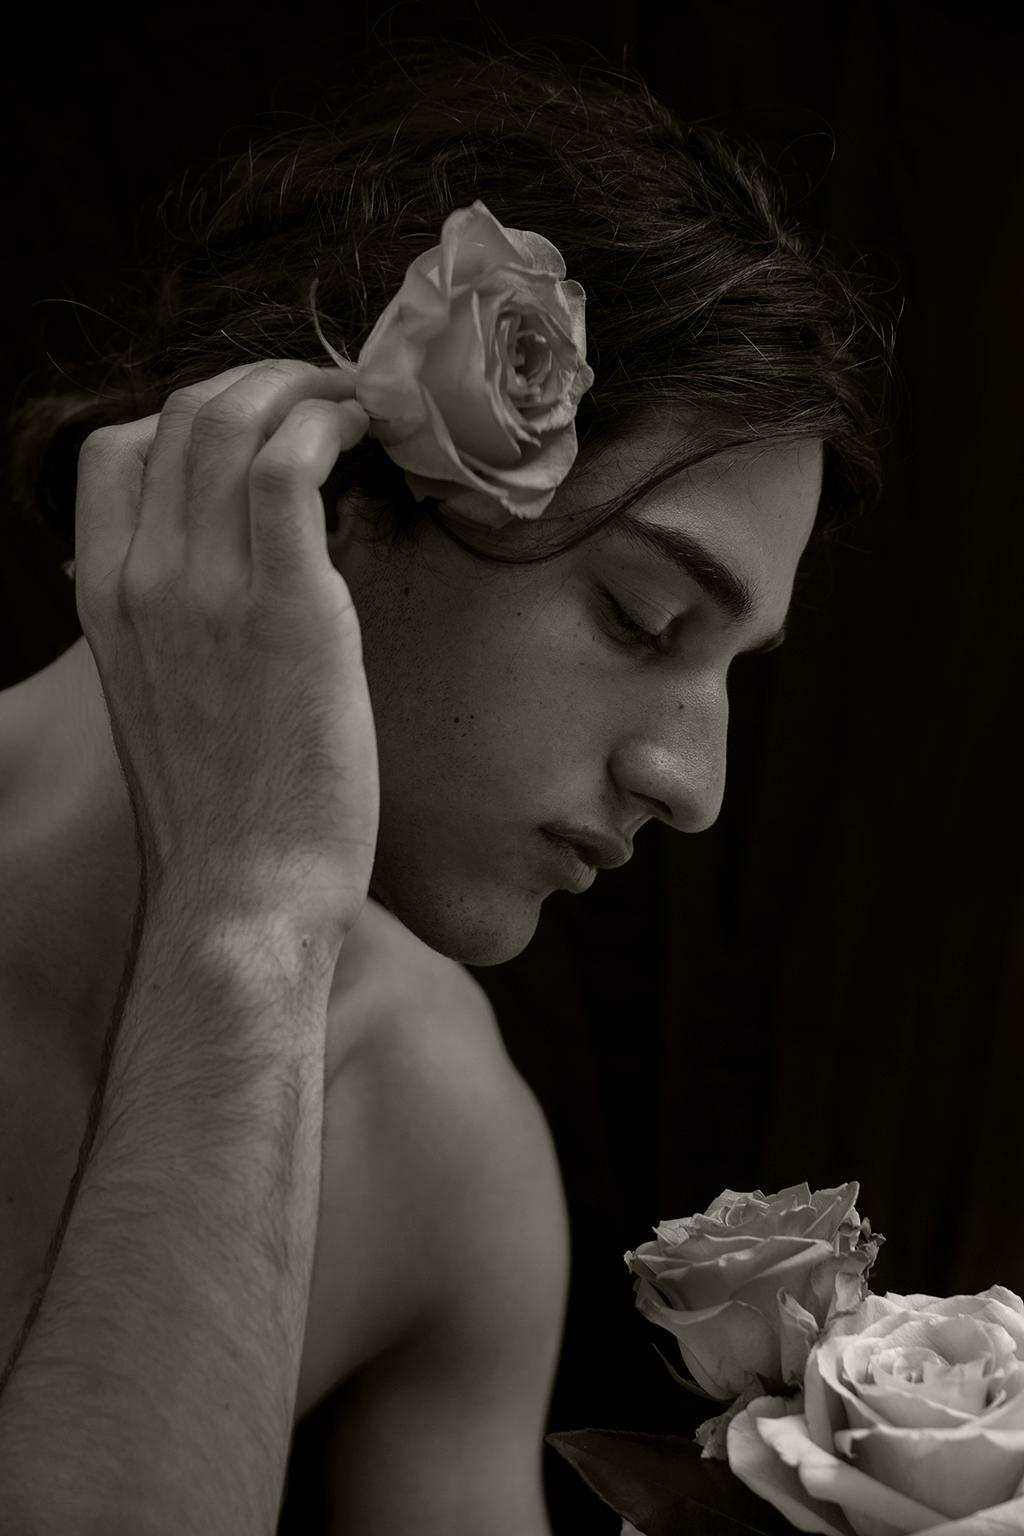 Black and White Photograph Ricky Cohete - Miguel y la Rosa. Portrait. Edition limitée de la photographie B&W